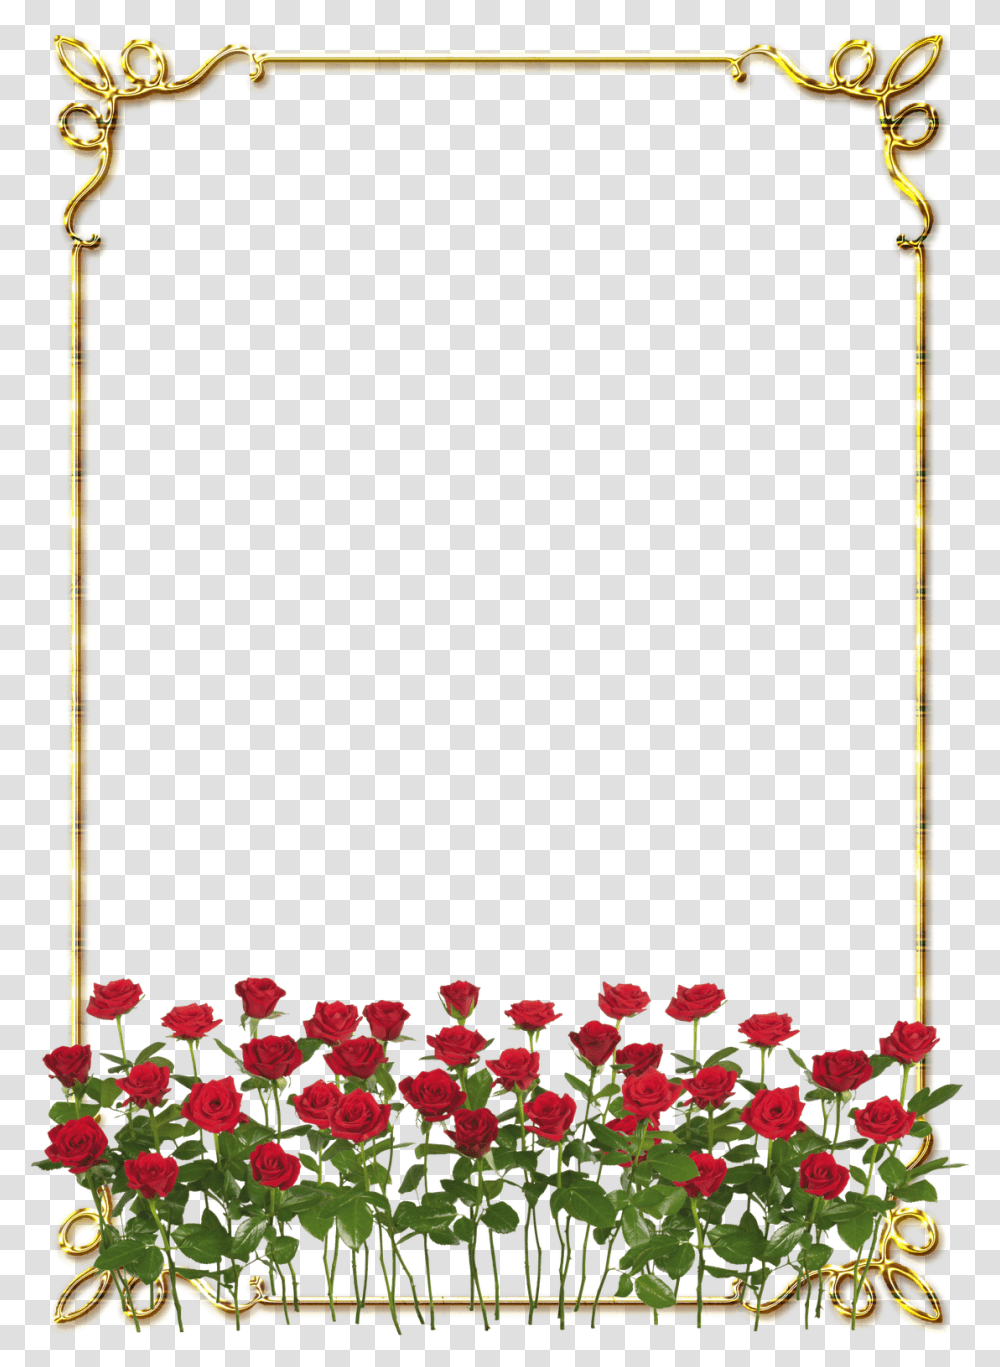 Download Hd Frames Douradas Com Rosa Vermelhas Rose Flowers, Plant, Blossom, Petal, Utility Pole Transparent Png